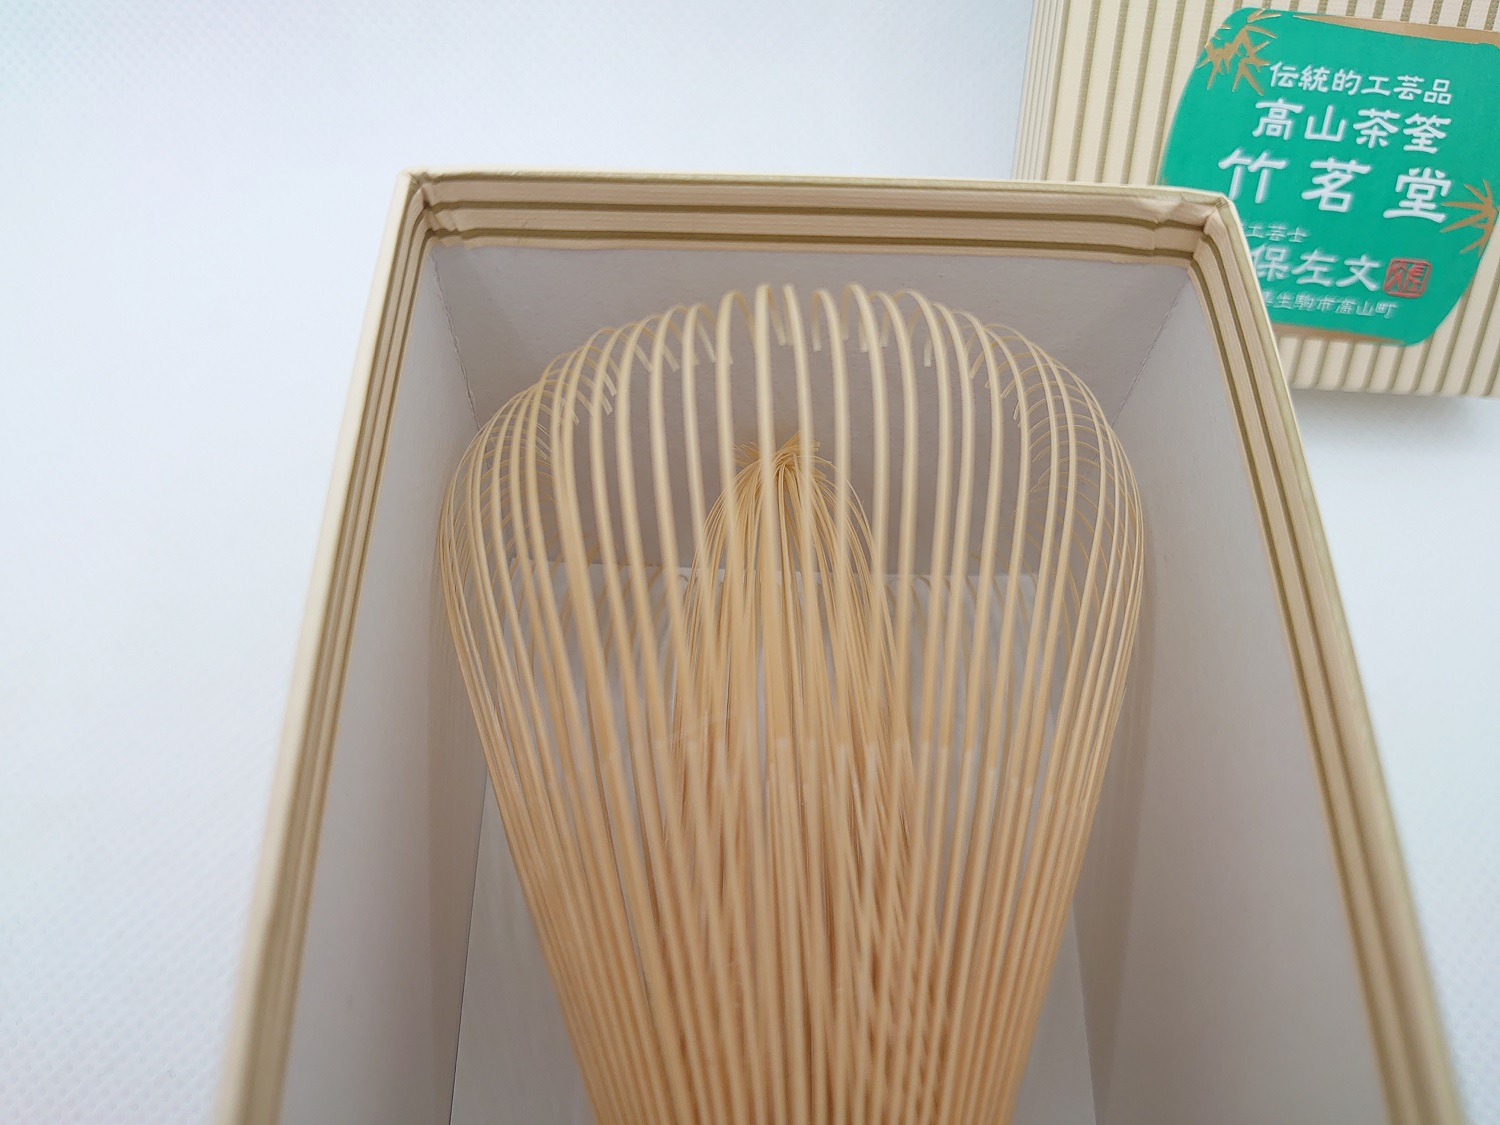 Takayama Chasen Bamboo Whisk 80 Prongs, Matcha Accessories